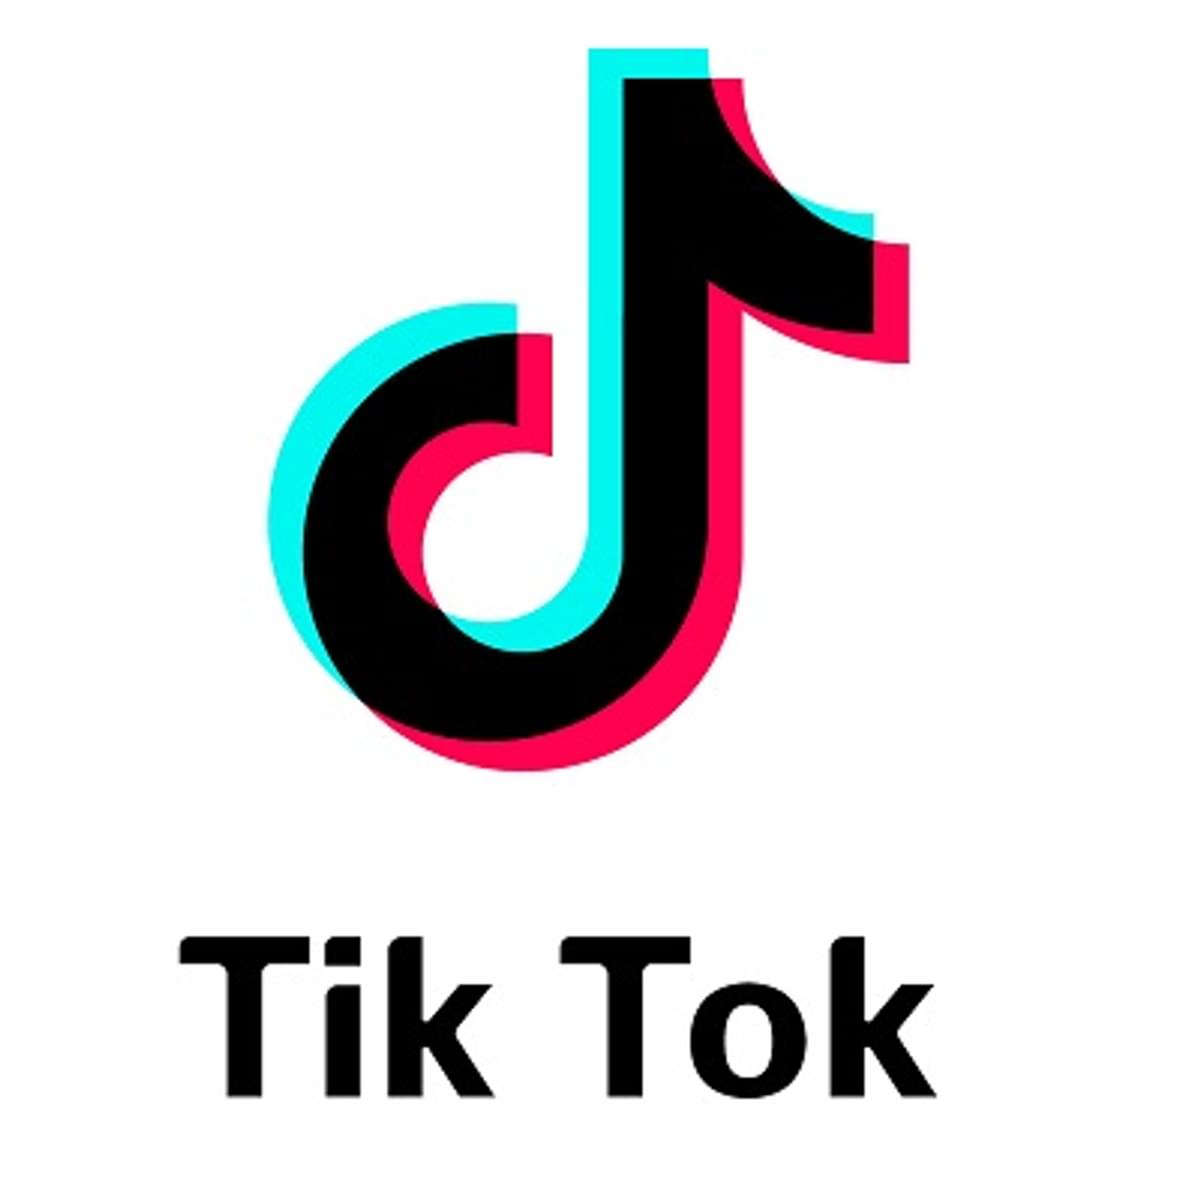 TikTok overweegt nieuwe bedrijfsstructuur vanwege kritiek image